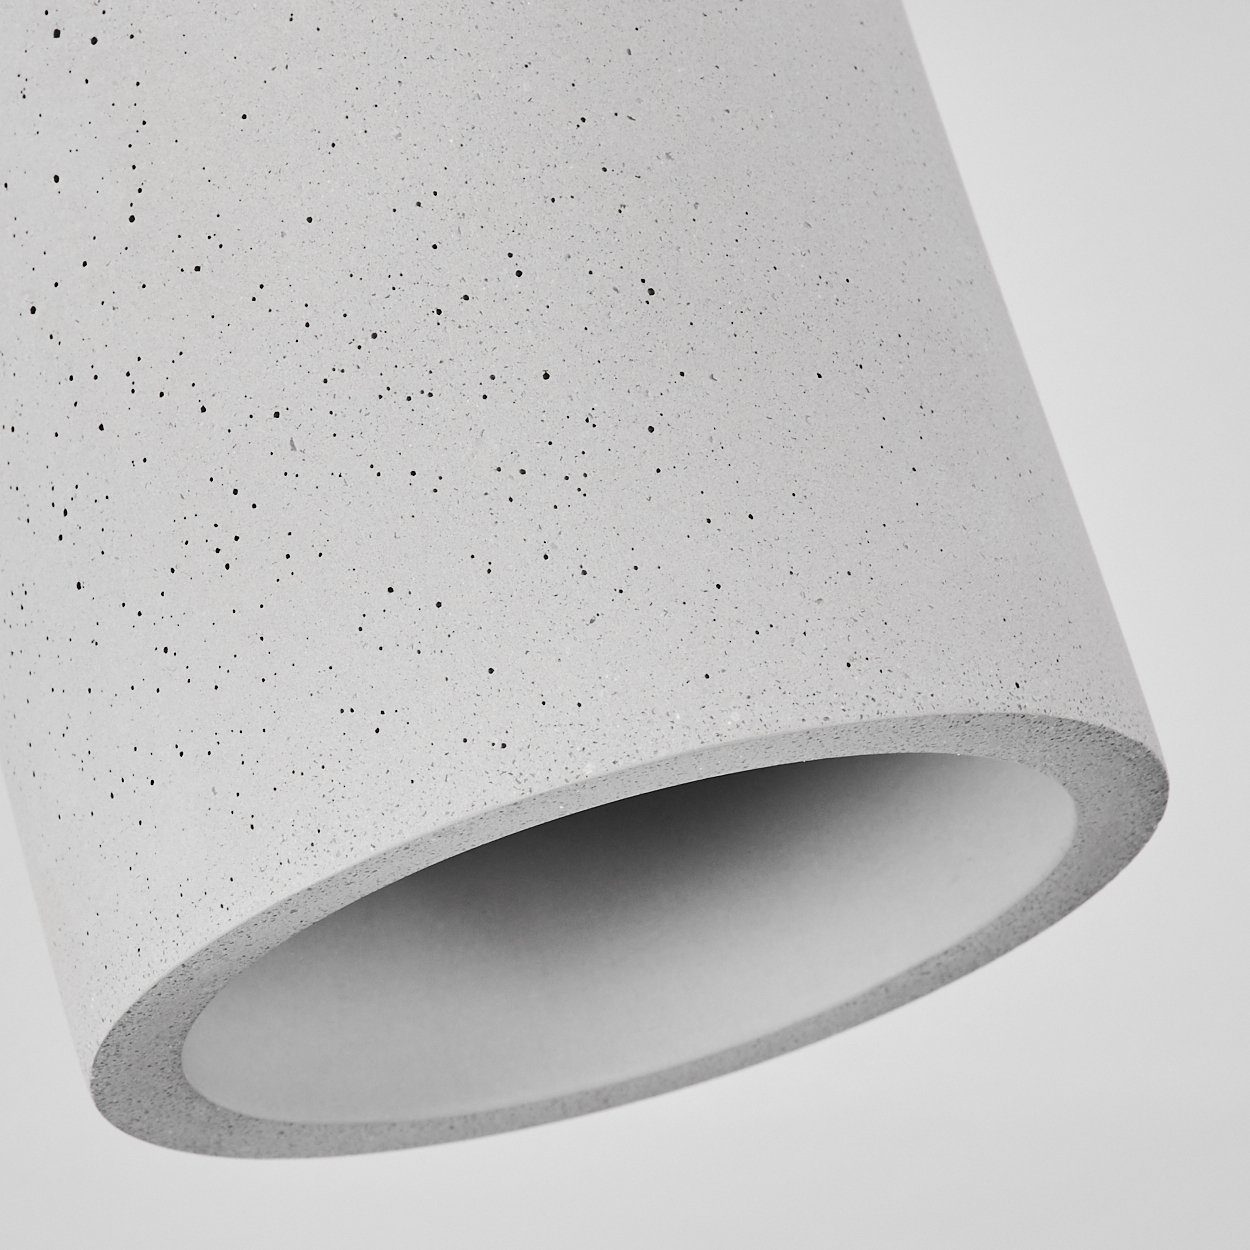 Leuchtmittel, im Ø11cm, Design, moderne »Portegrandi« Deckenlampe schlichten runde Beton Leuchte Grau, ohne Deckenleuchte hofstein in 1xGU10 aus